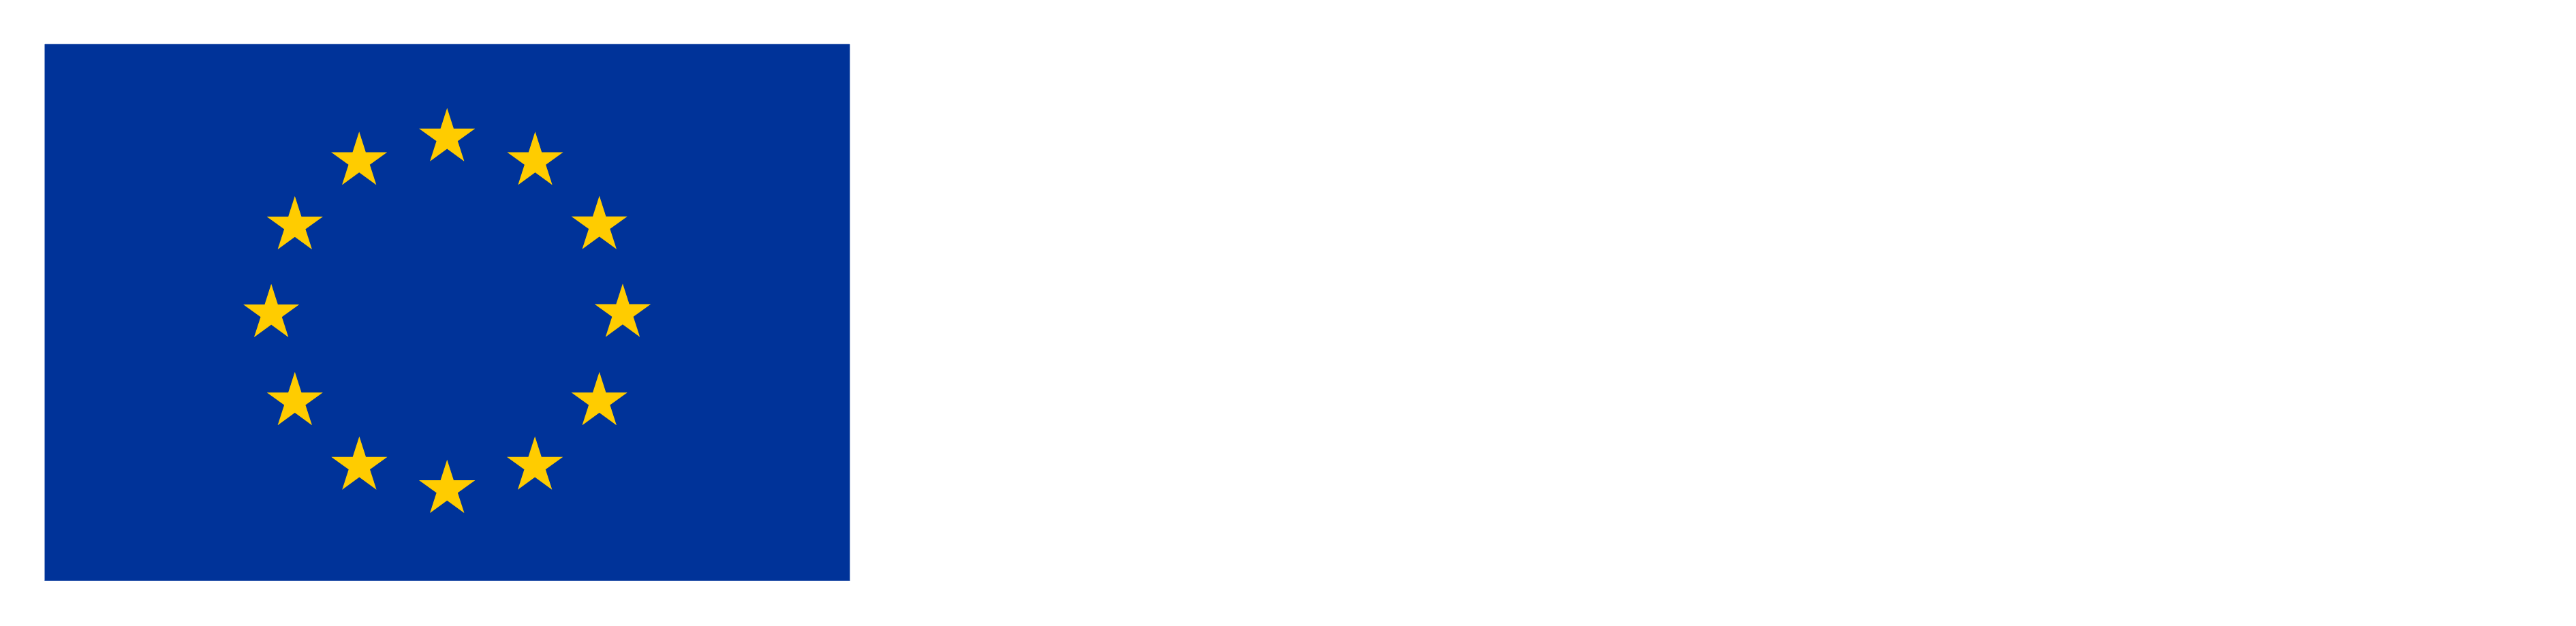 Web financiada por la Unión Europea